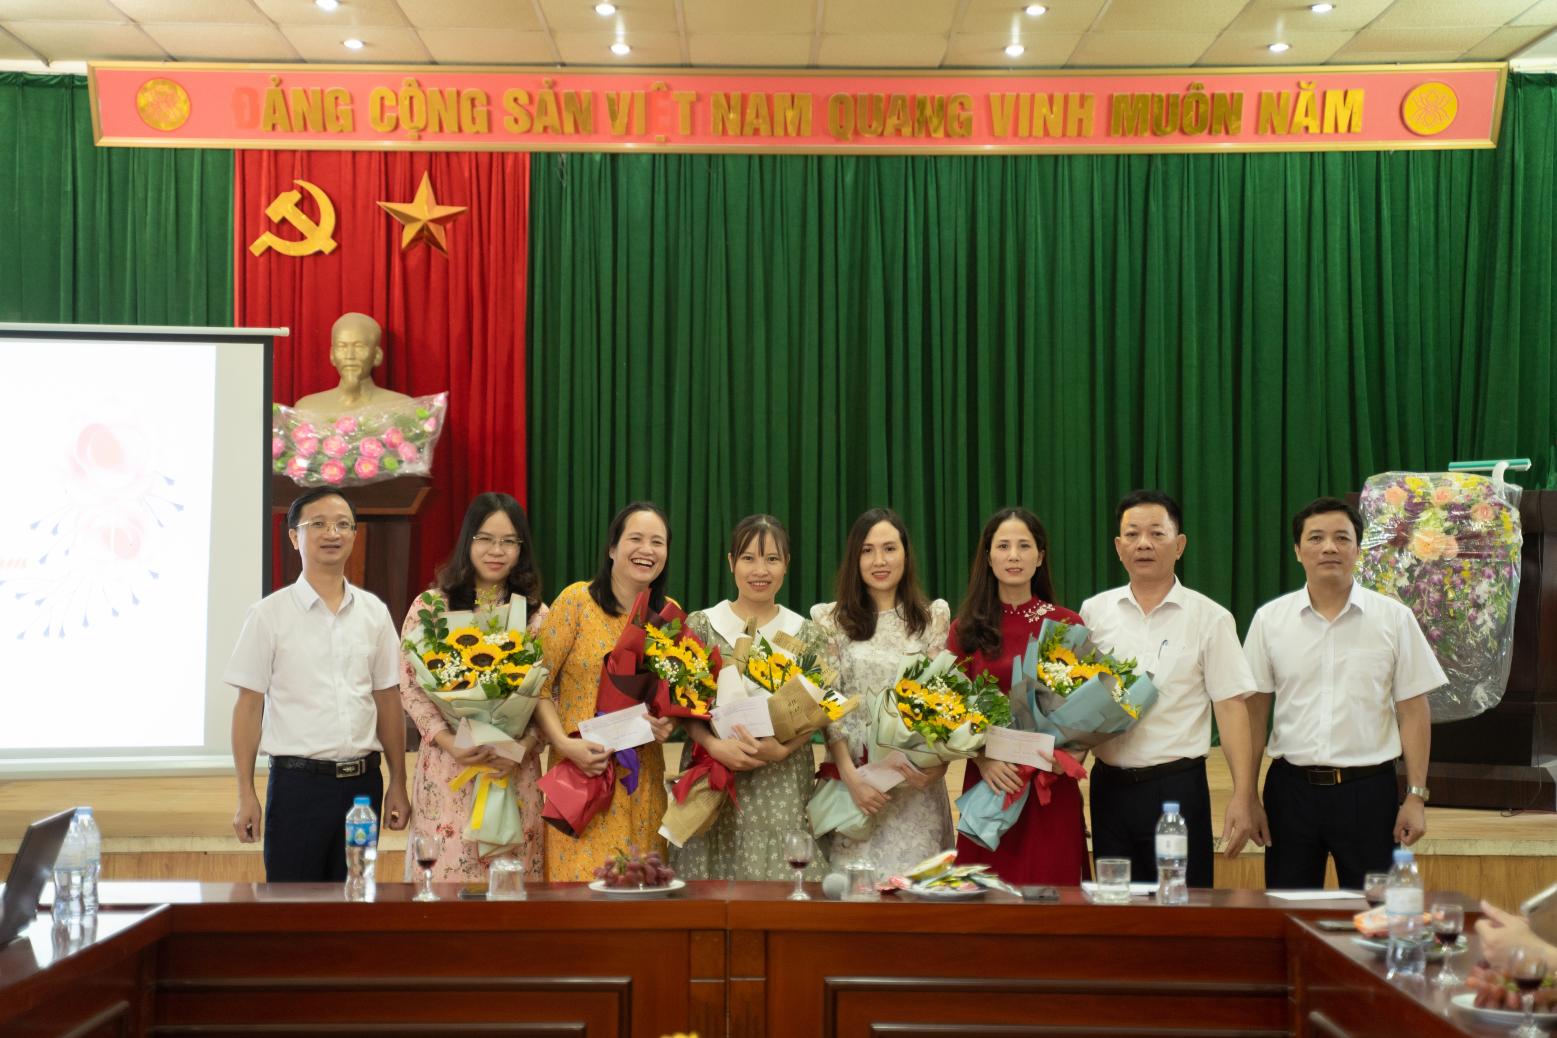 Xí nghiệp Dịch vụ Điện lực Hưng Yên tổ chức chào mừng kỷ niệm Ngày Phụ nữ Việt Nam 20/10 và chúc mừng các đồng chí có sinh nhật trong Quý 4